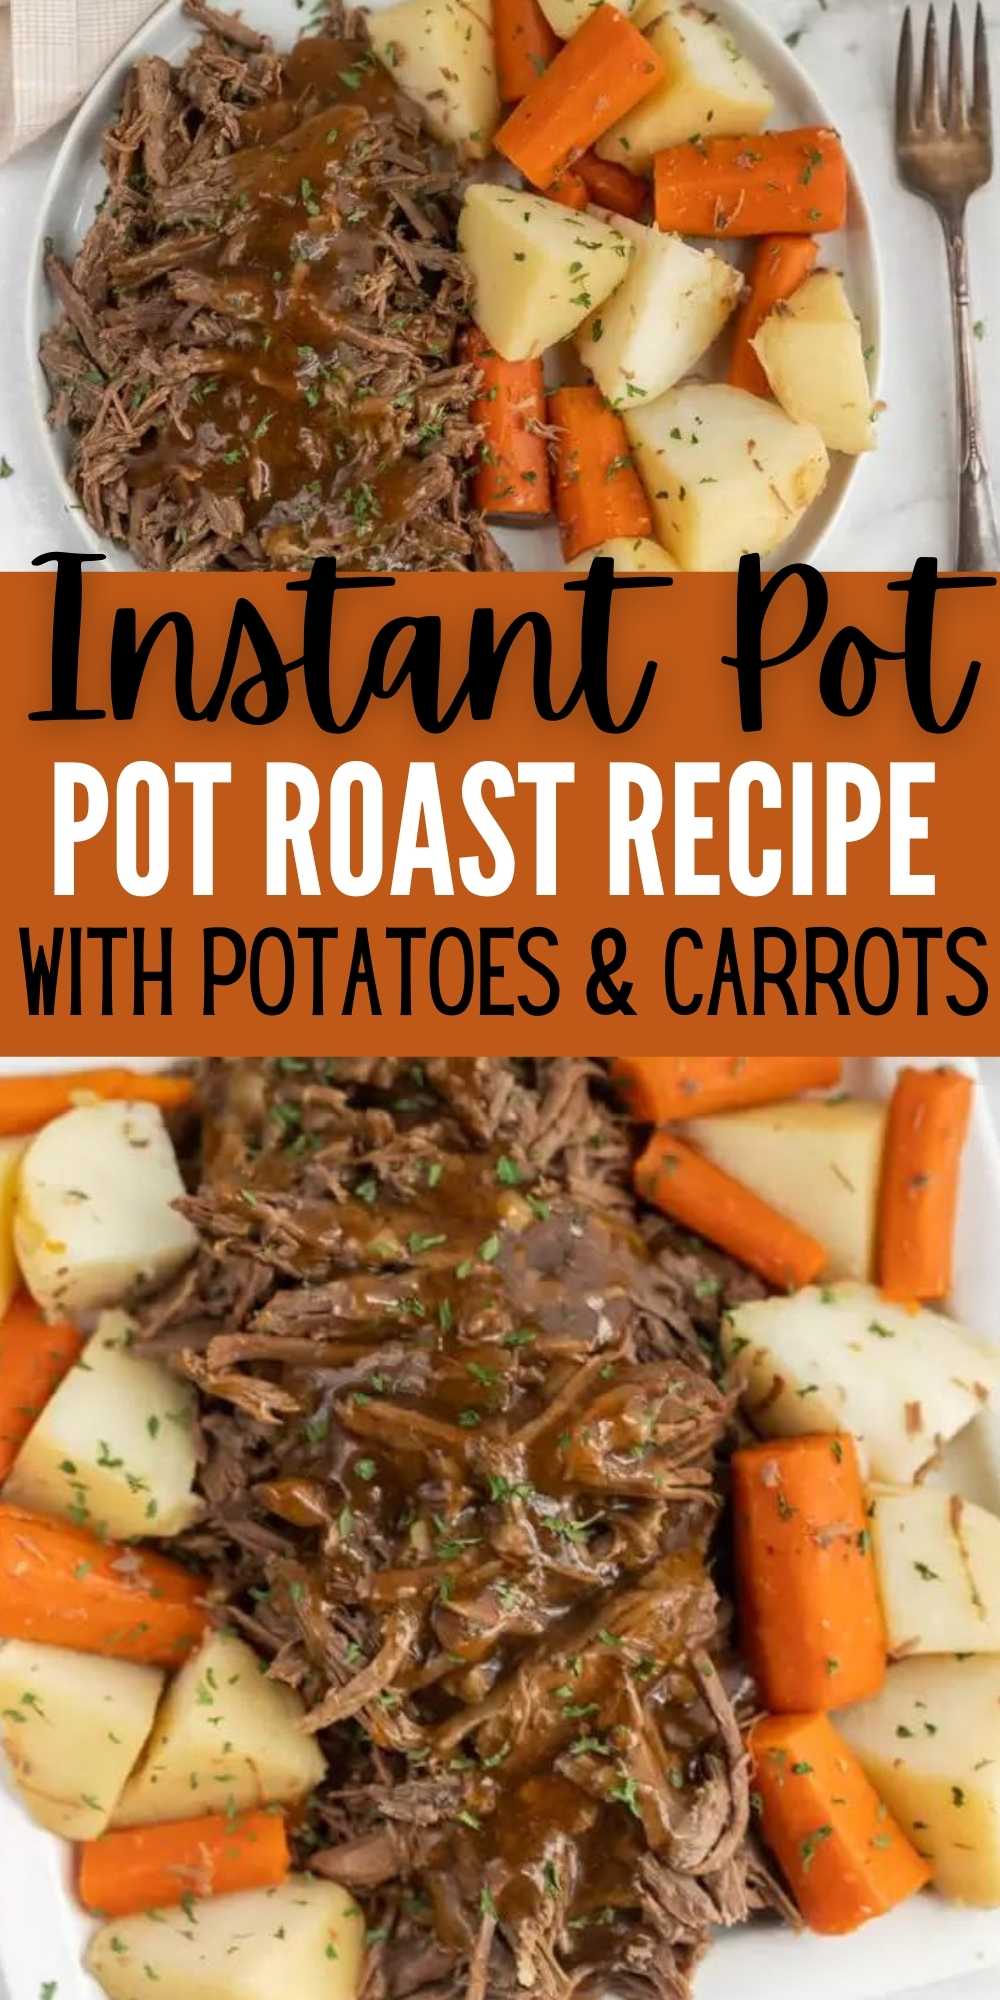 Easy Instant Pot Pot Roast